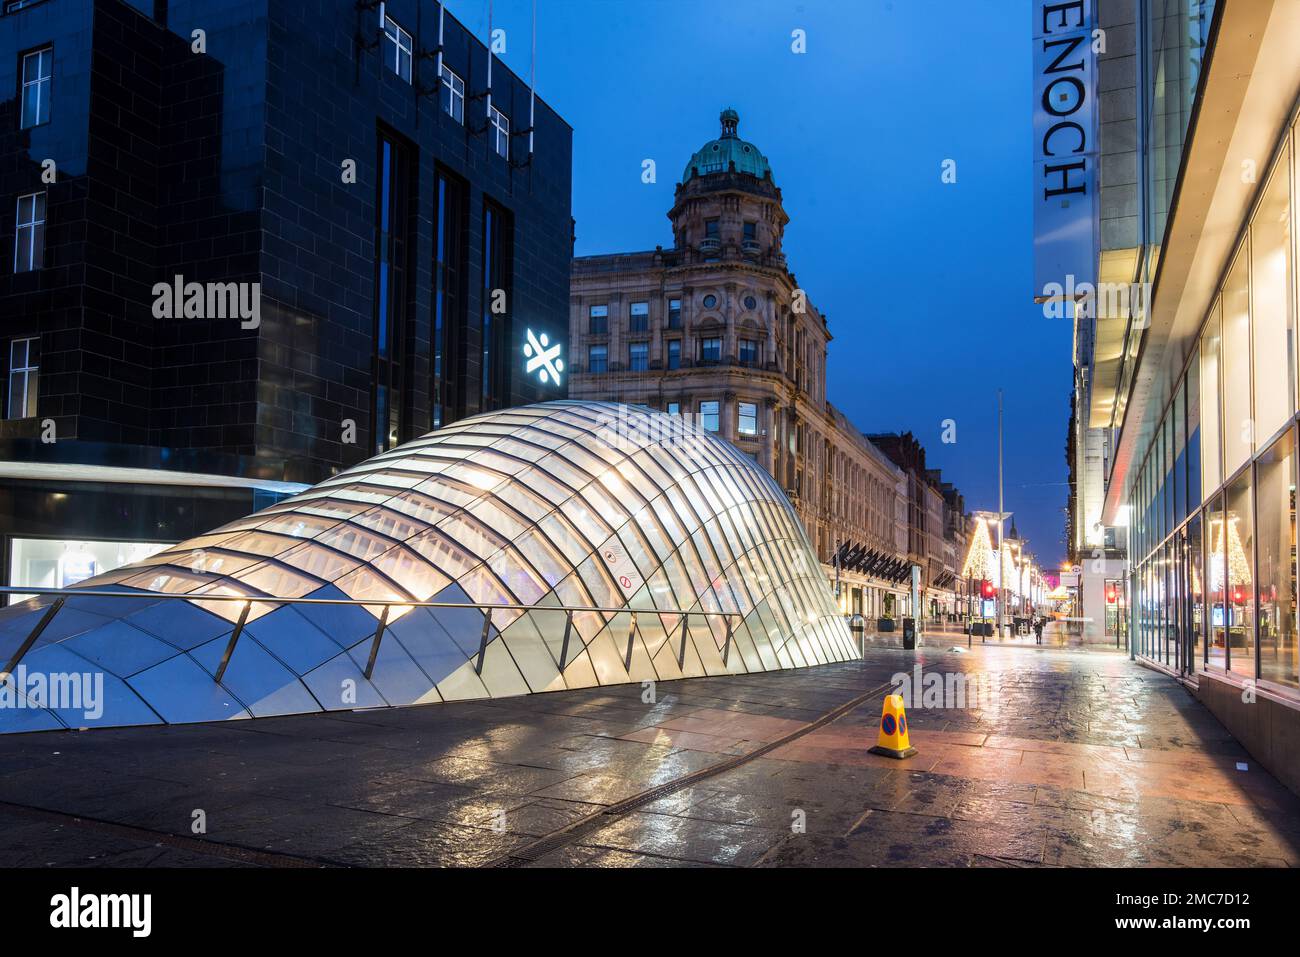 Photo nocturne avec l'entrée de la verrière à la place St Enoch, Glasgow, Écosse. Banque D'Images